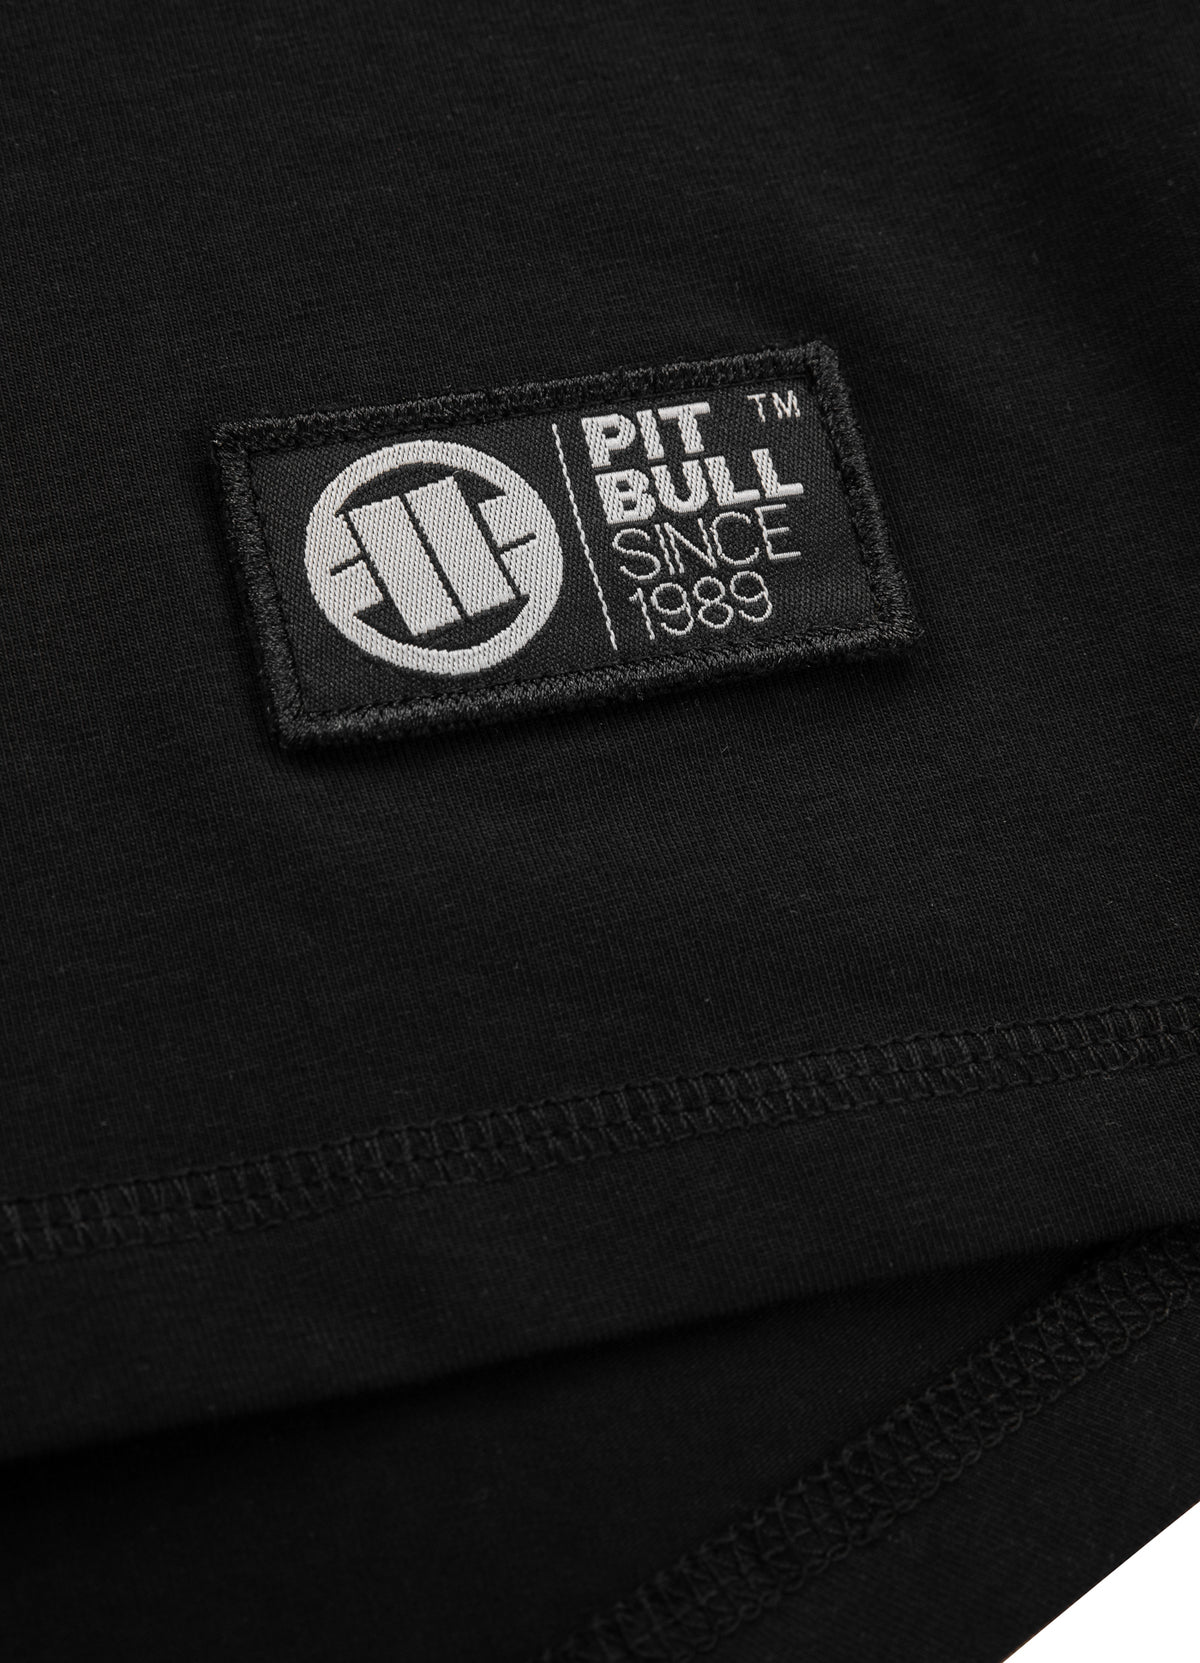 HILLTOP 210 Heavyweight Black T-shirt - Pitbullstore.eu